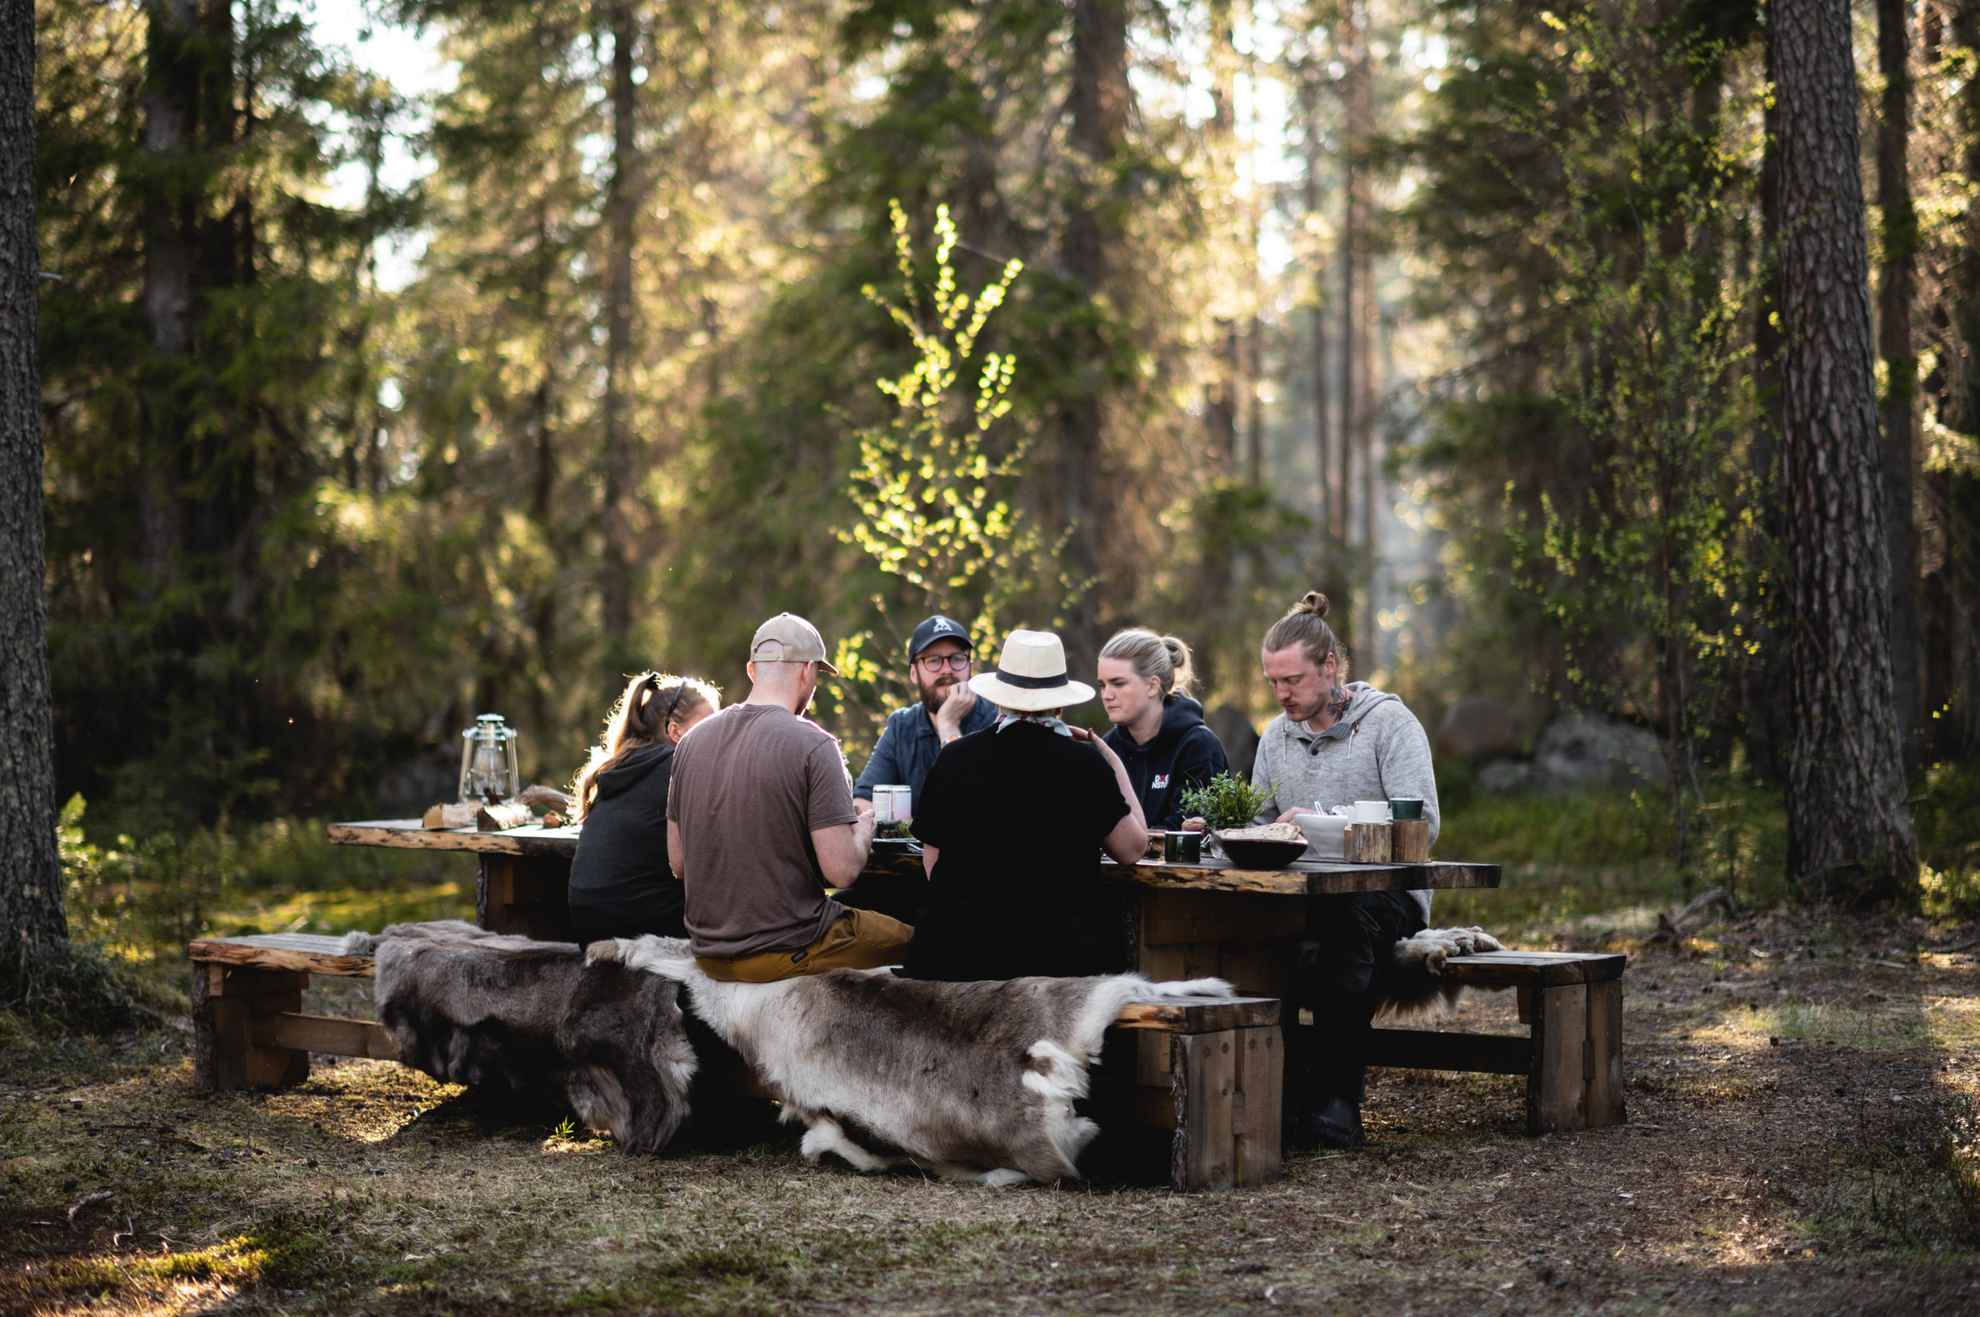 Zes personen zitten aan een houten tafel in een bos. Ze zitten op banken met schapenvachten. De zon schijnt door de bomen.